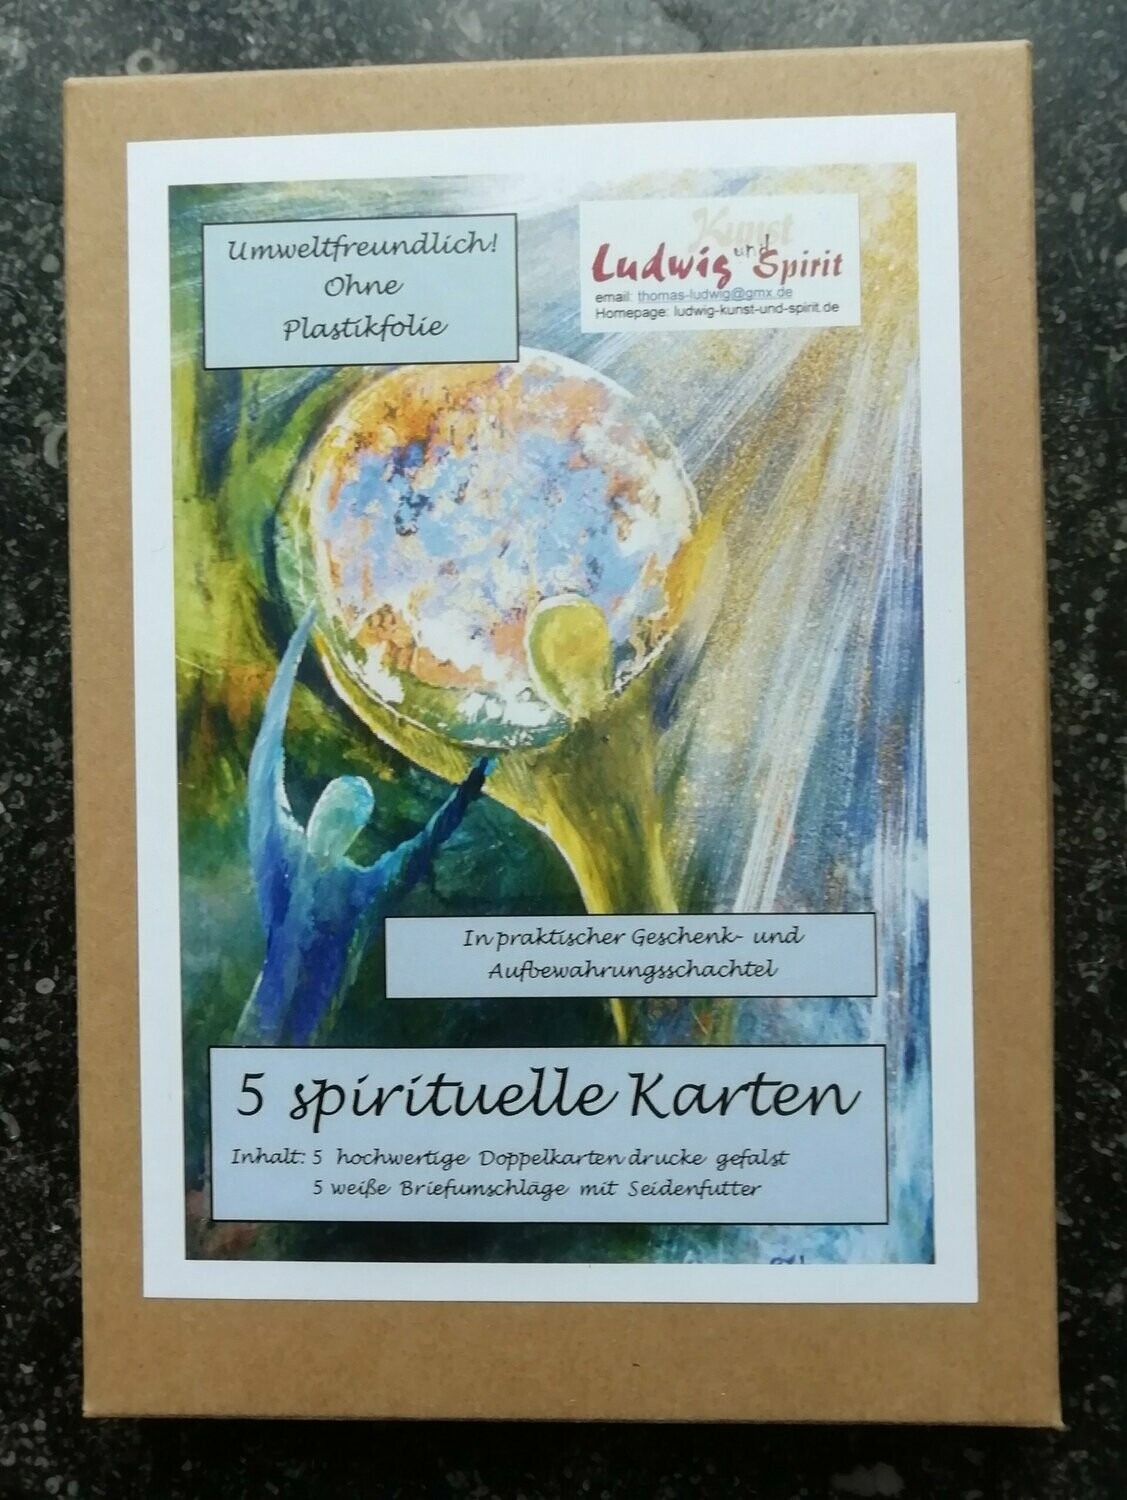 5 spirituelle Karten
Versandkostenfrei innerhalb Deutschlands